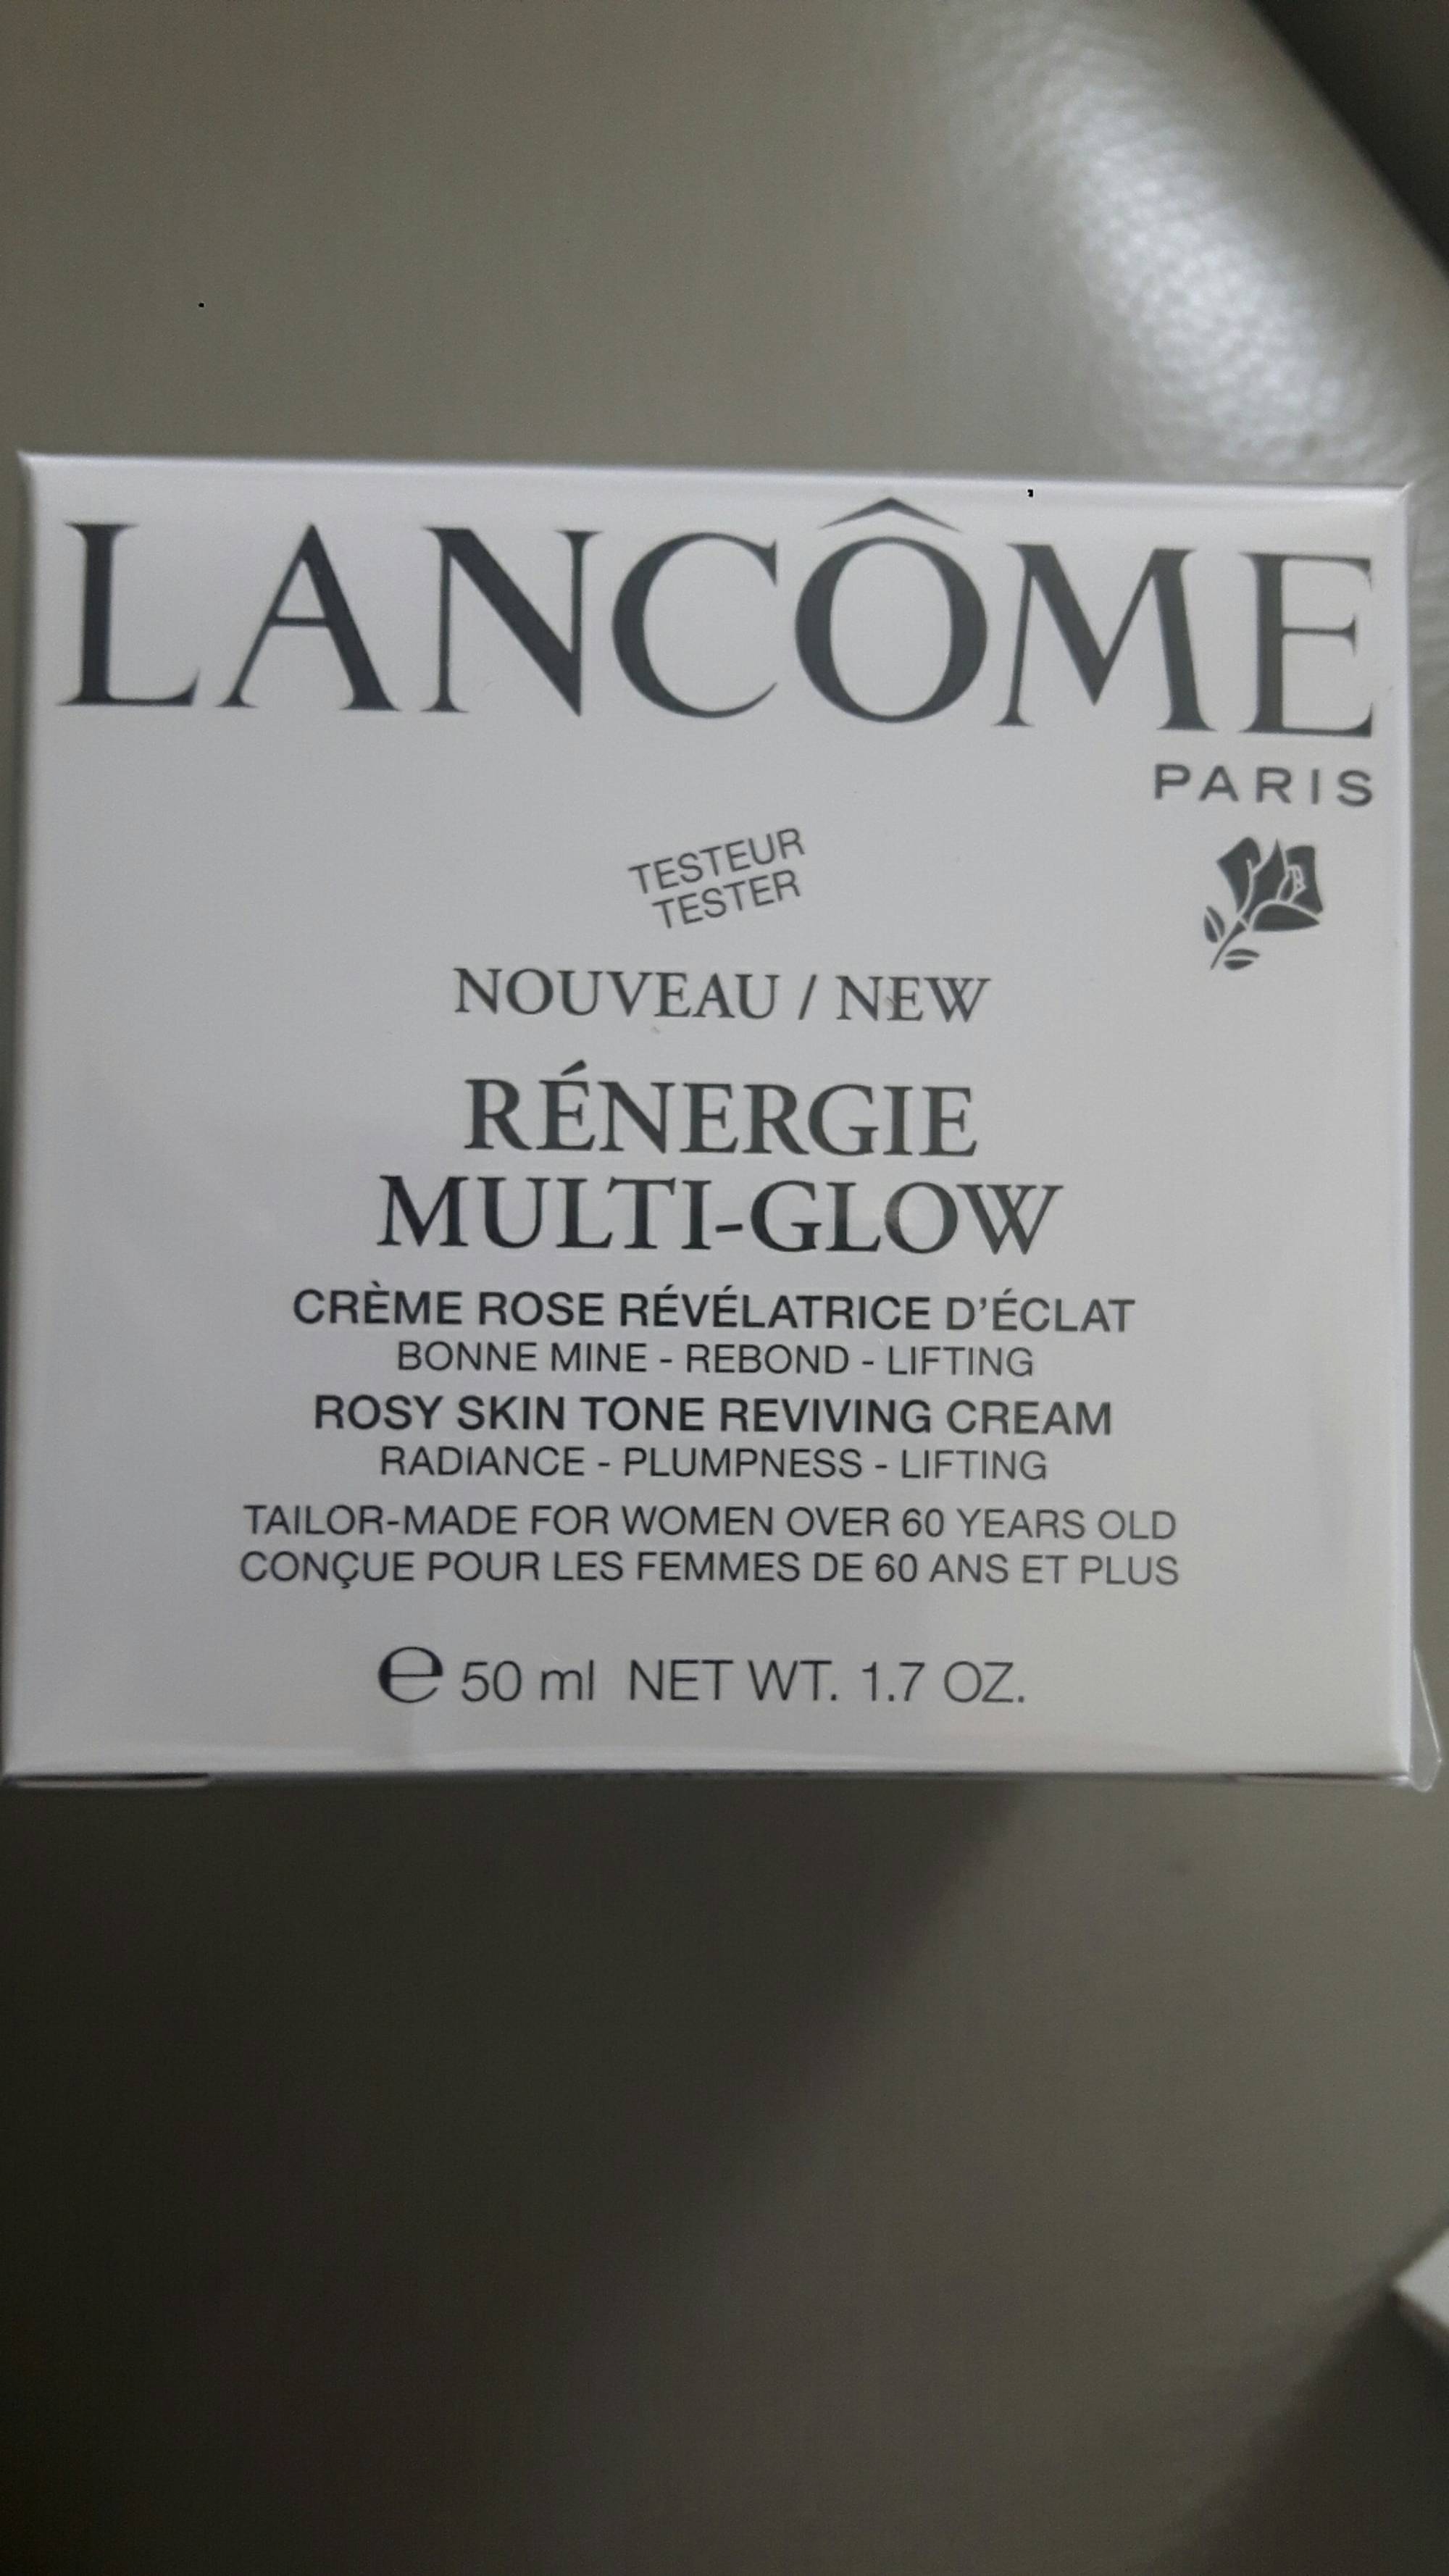 LANCÔME - Rénergie multi-glow - Crème rose révélatrice d'éclat